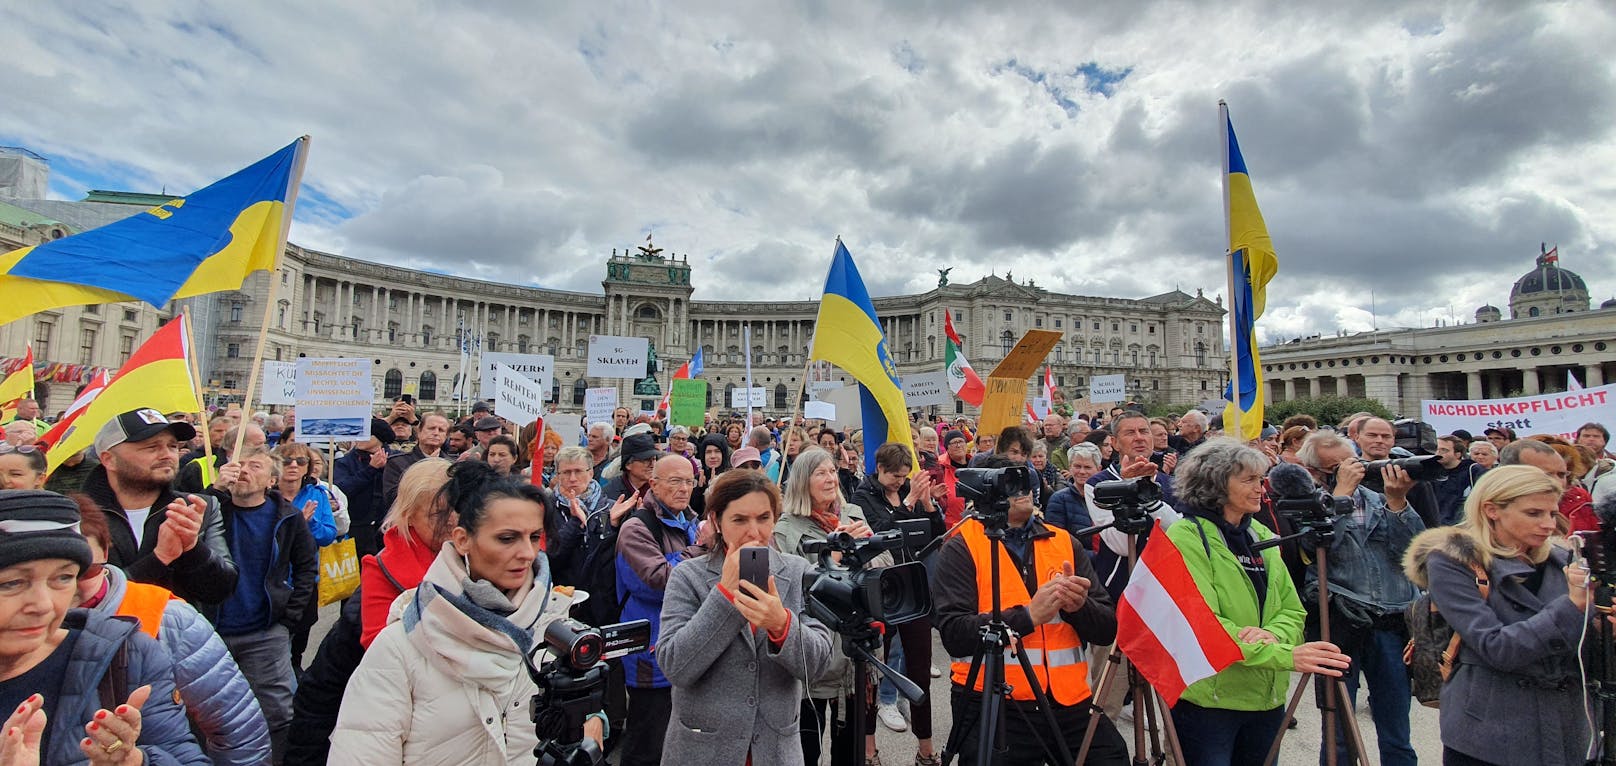 Am Wiener Heldenplatz wurde wieder eine Demo angekündigt.